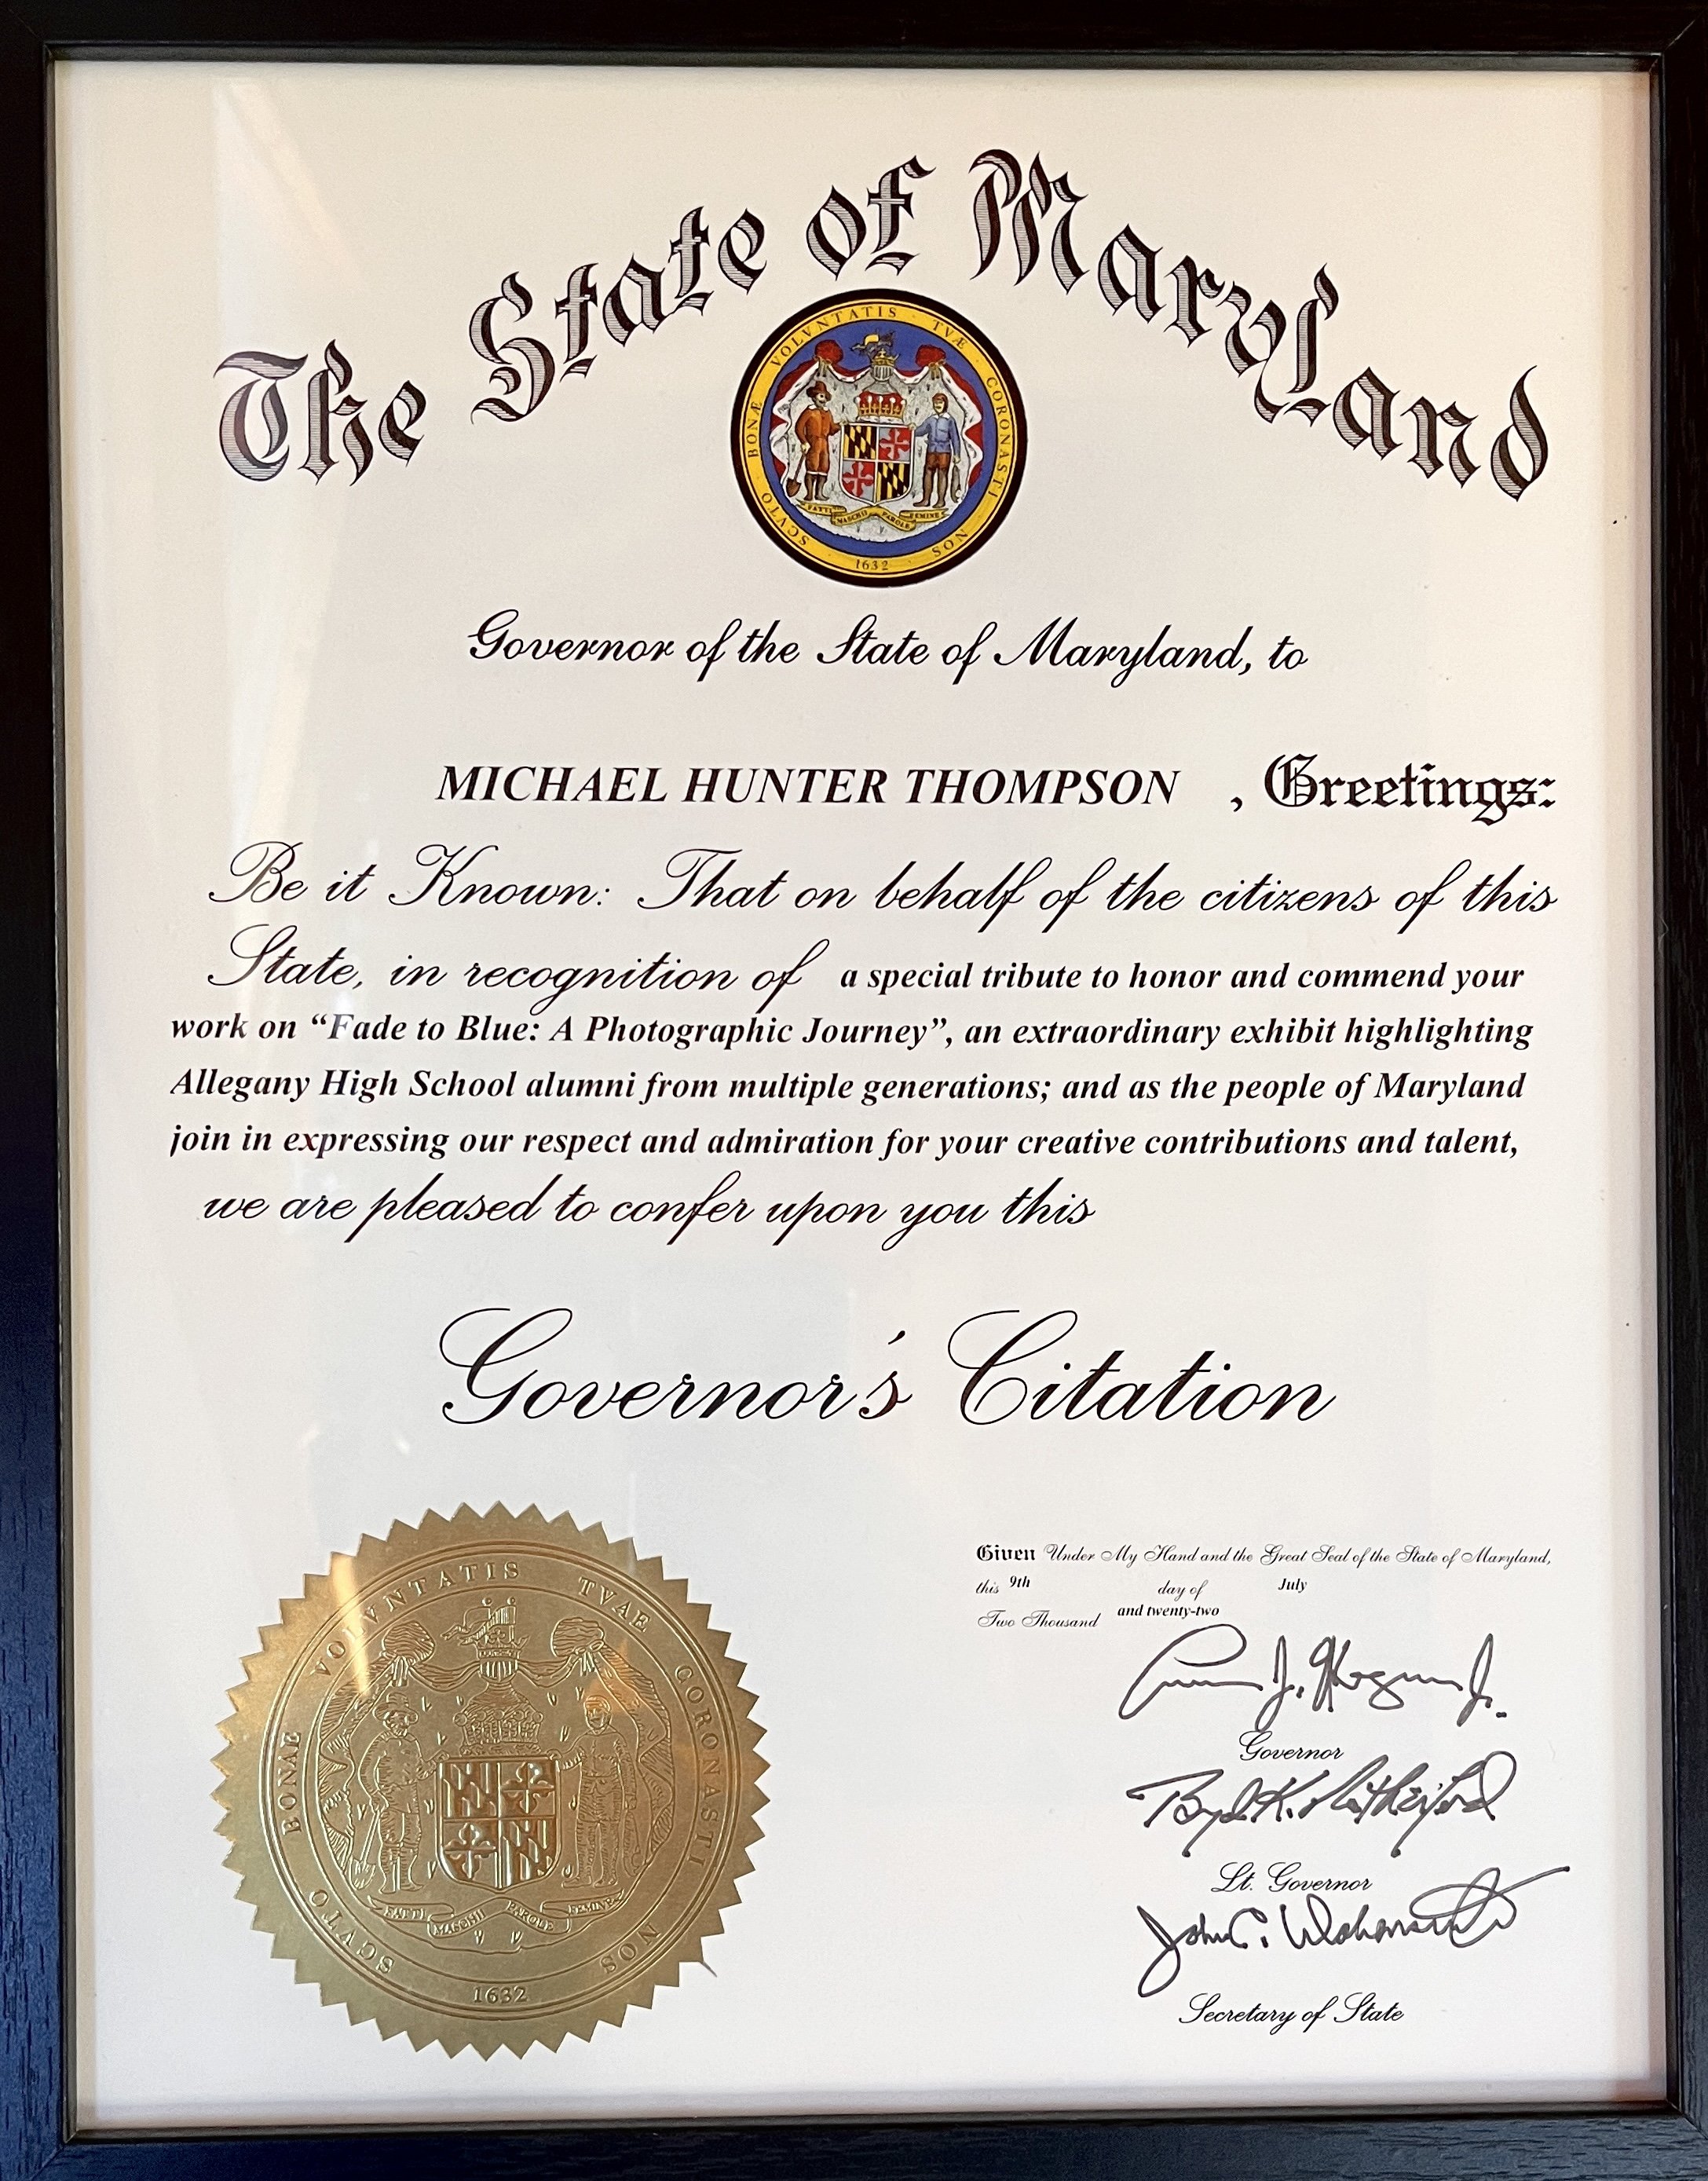 Governor's Citation